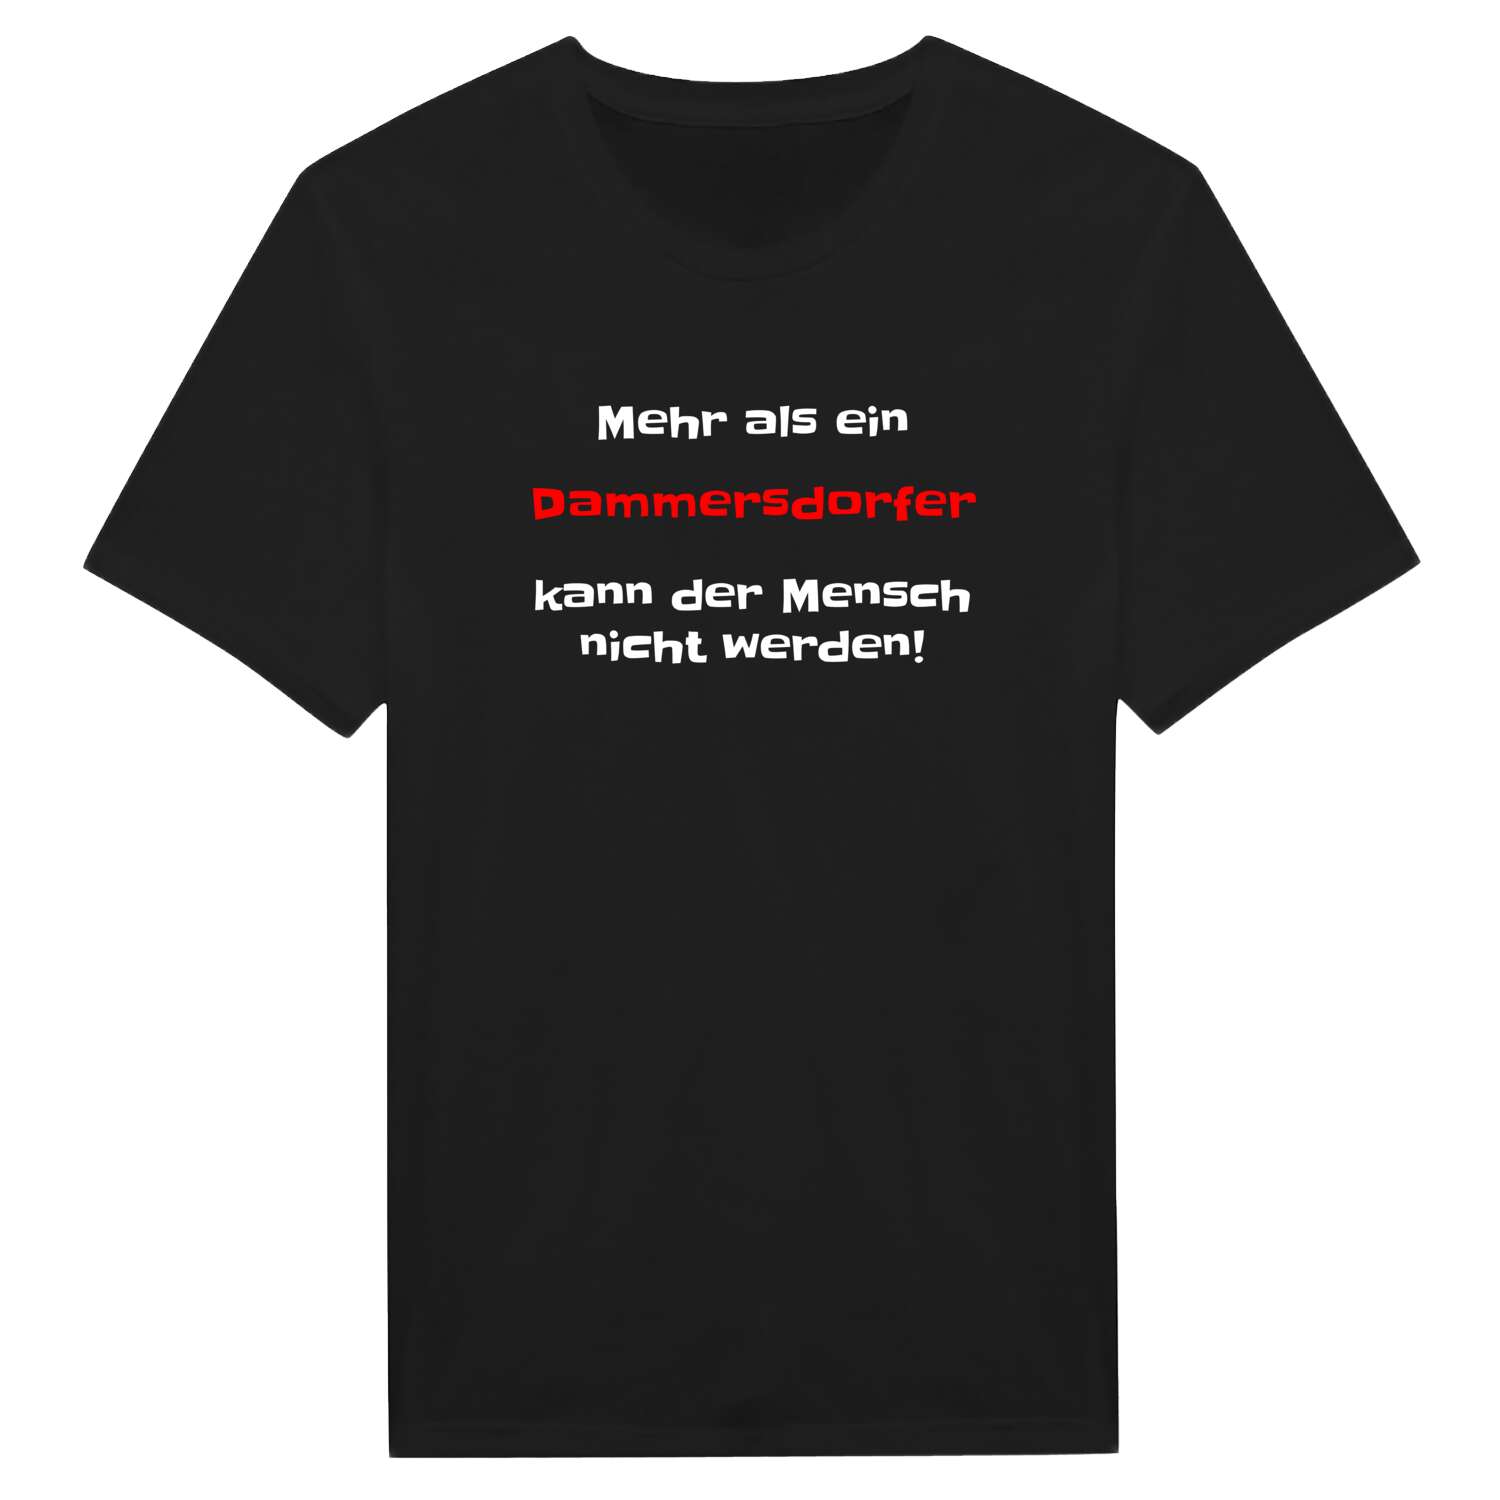 Dammersdorf T-Shirt »Mehr als ein«